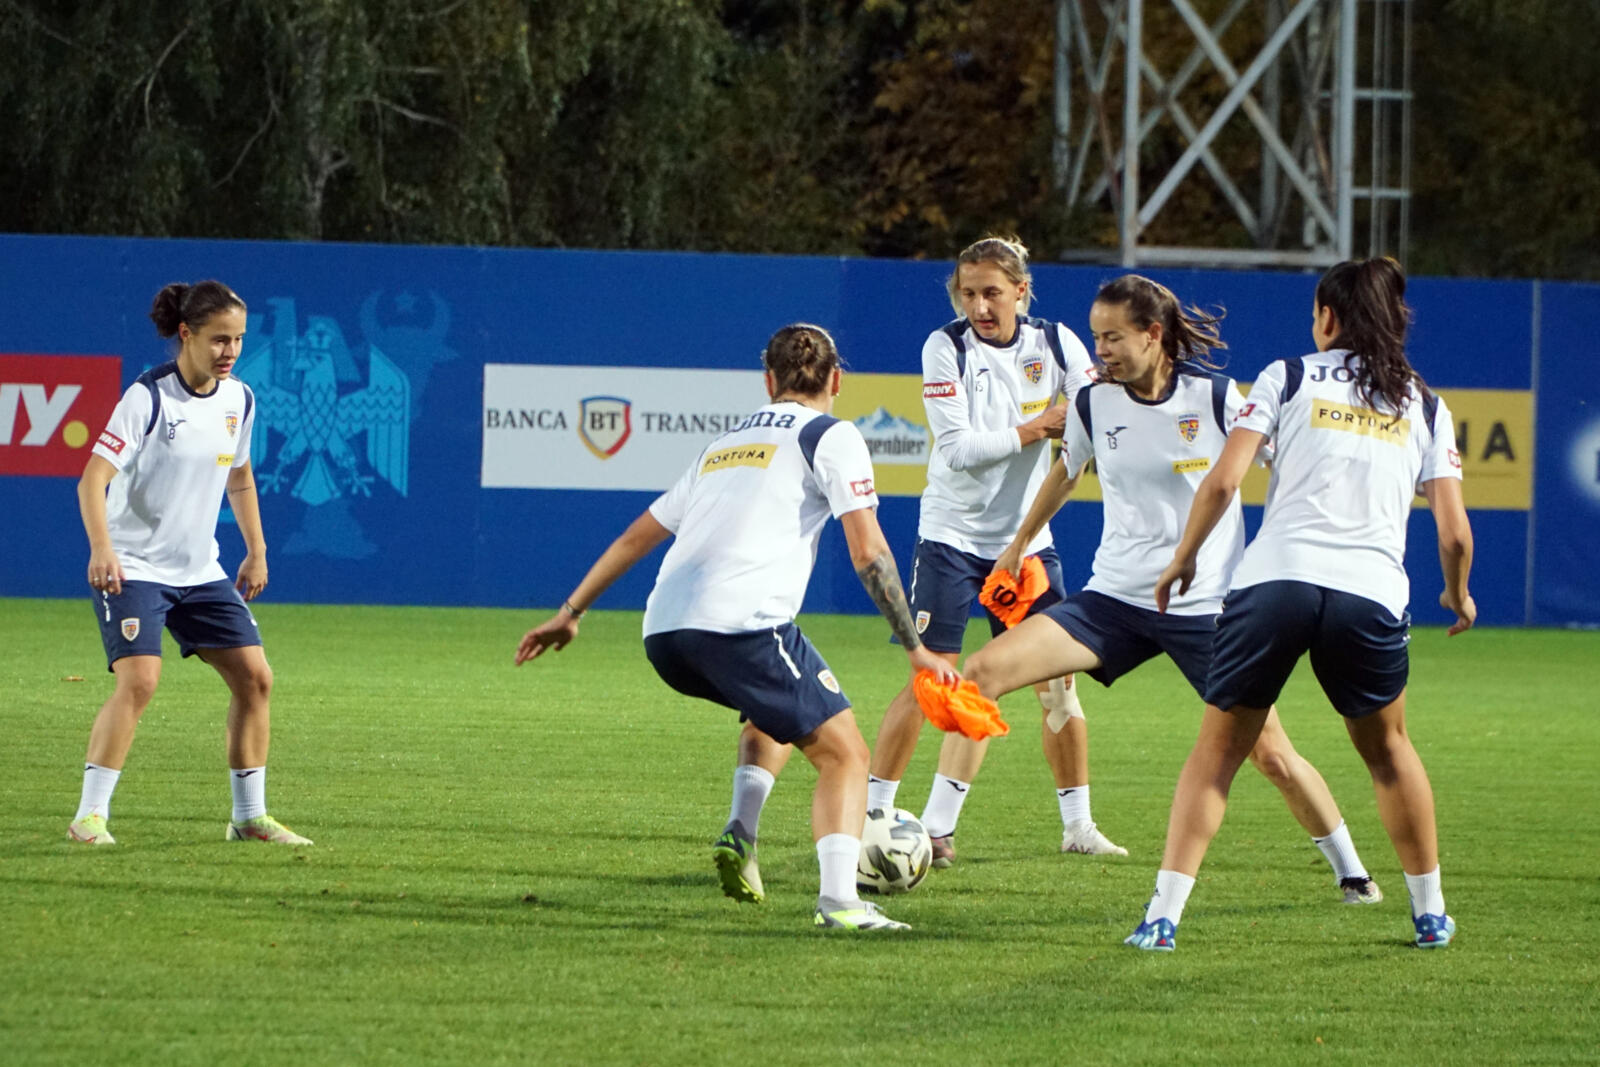 România - Slovacia, LIVE VIDEO, 19:00, Digi Sport 2, în Liga Națiunilor la fotbal feminin. ”Tricolorele”, fără victorie